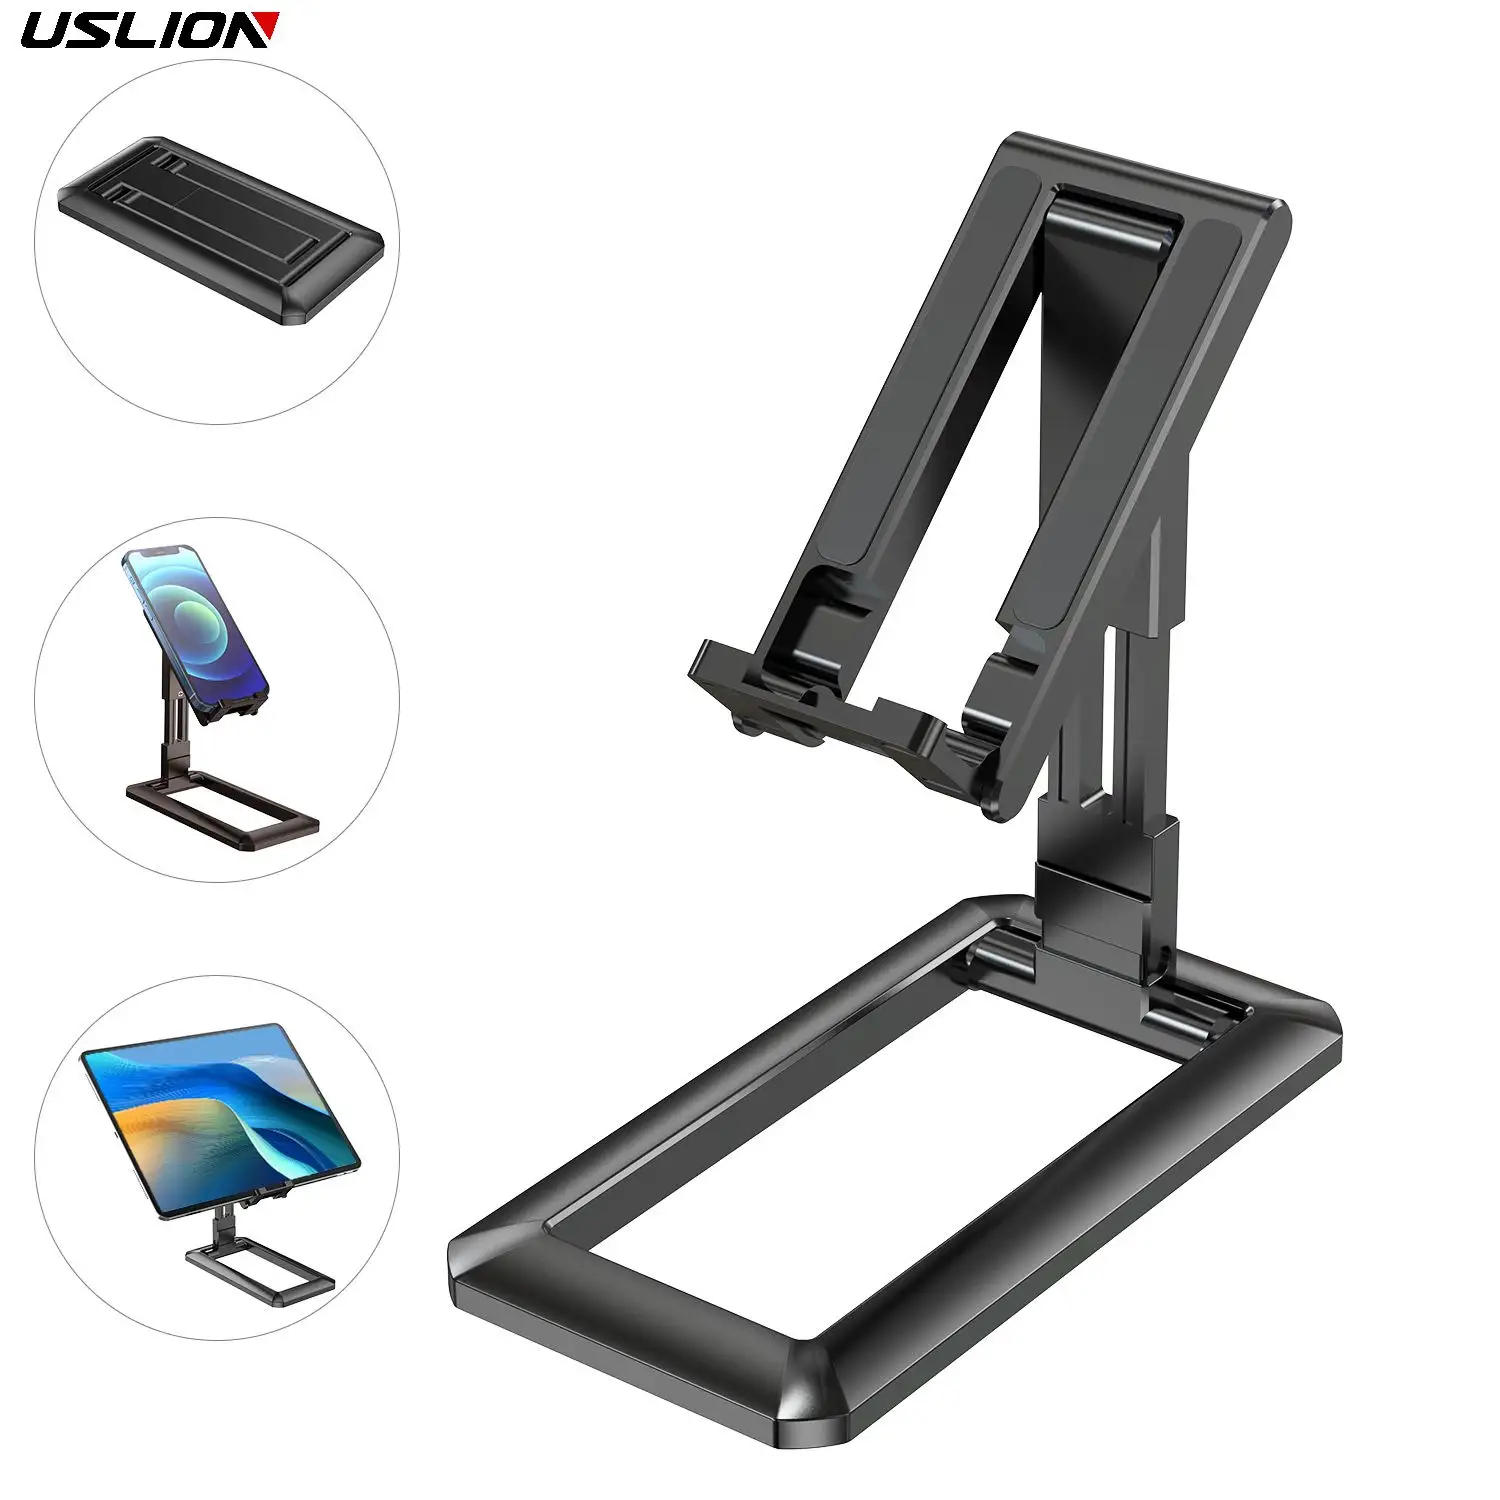 USLION Mini Folded Desktop Universal Flexible Support Smartphones Tablet Adjustable Cell Phone Holder Stand